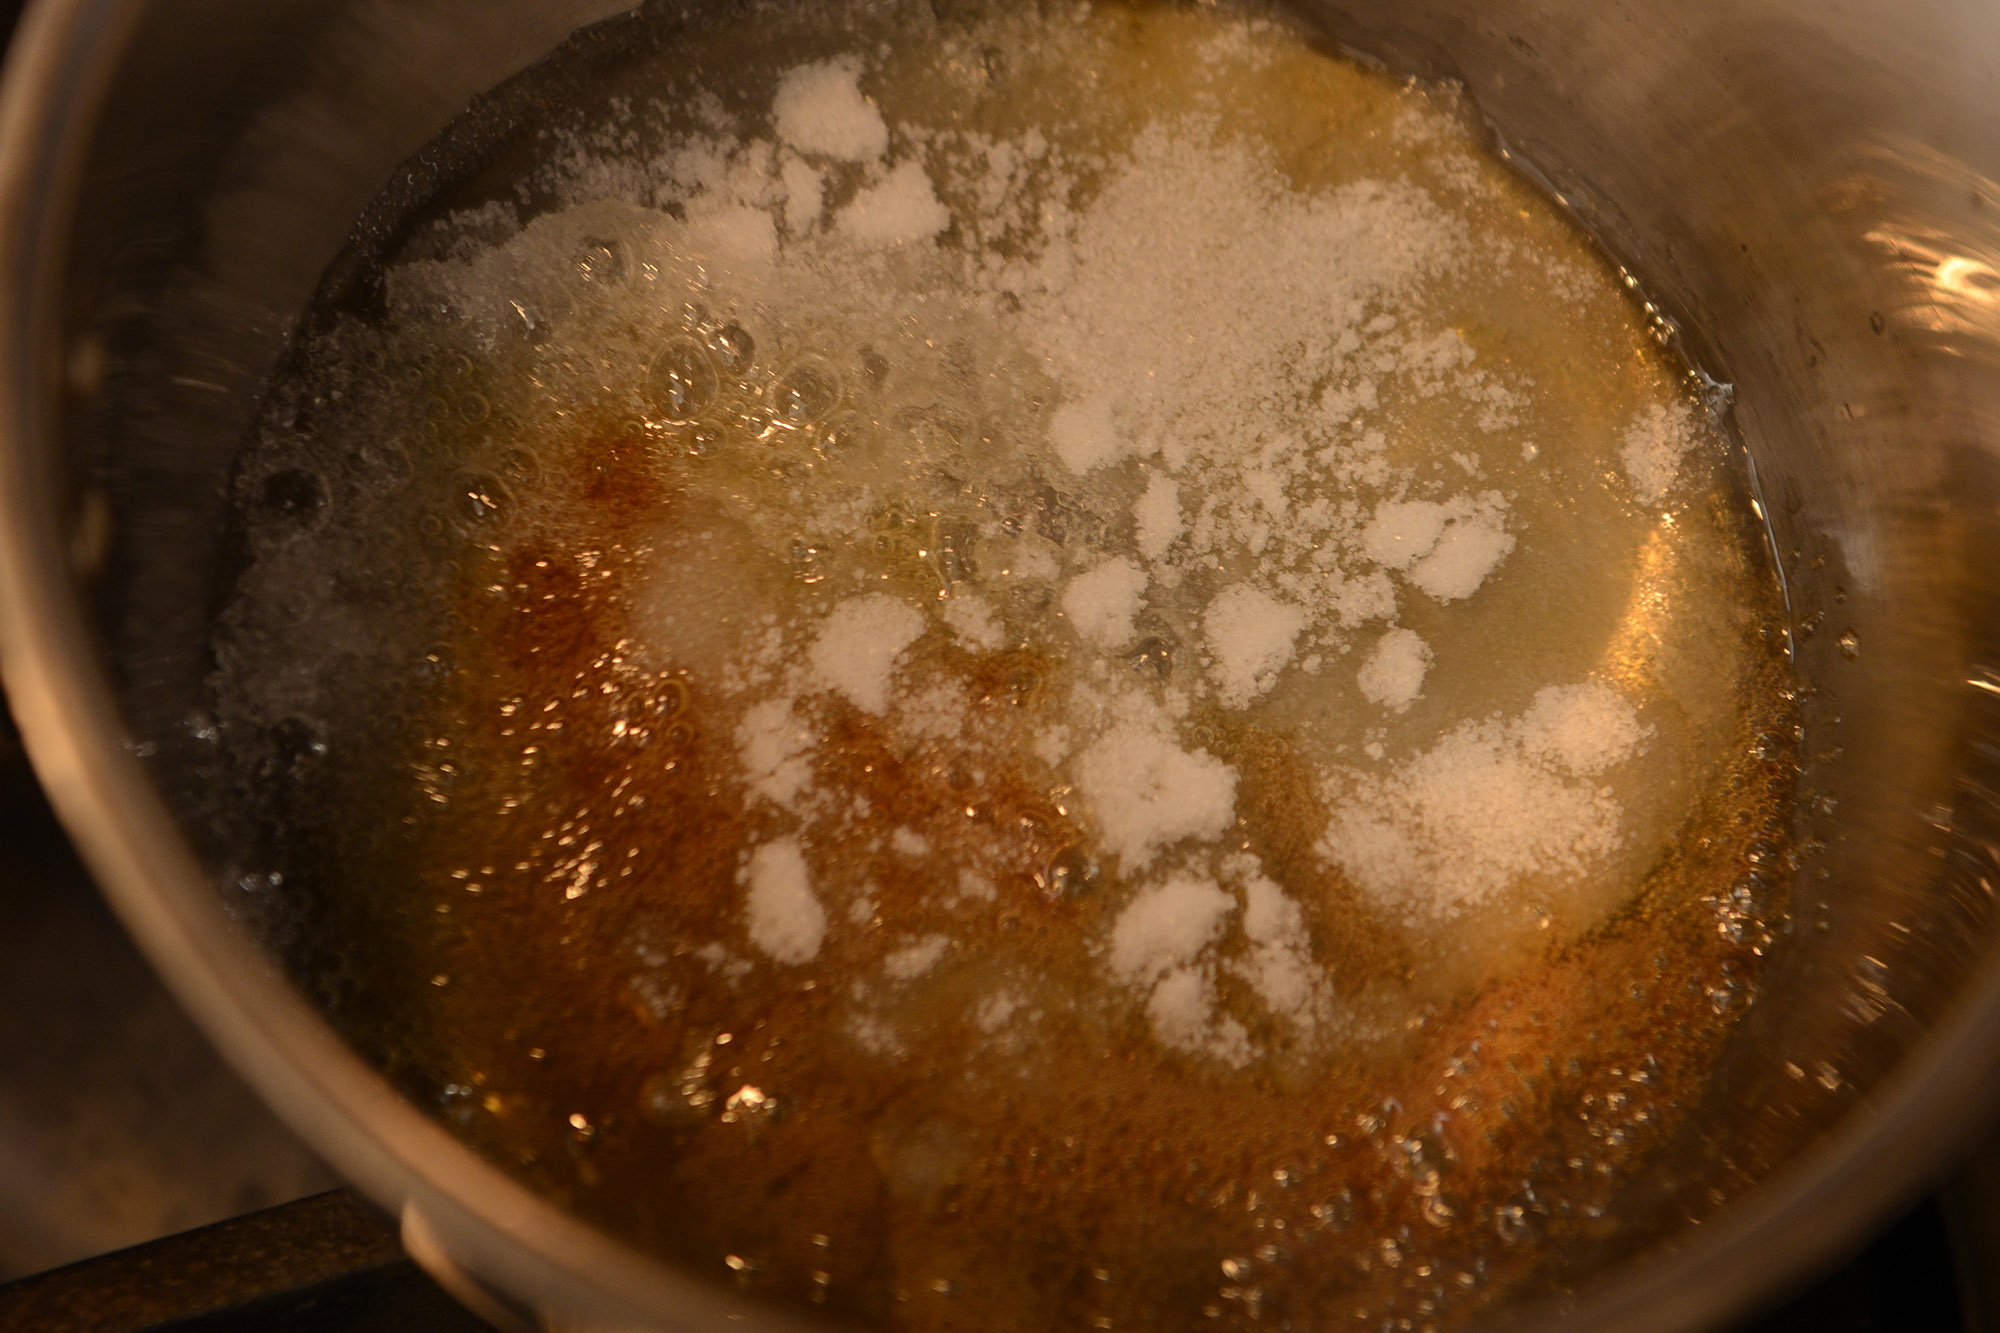 【５】カラメルを作る。鍋の内側を水で濡らし、グラニュー糖を75g入れて強めの中火にかける。スプーンは使わず、鍋を傾けたり、揺すって全体に火を入れる。 POINT：スプーンは使わない。